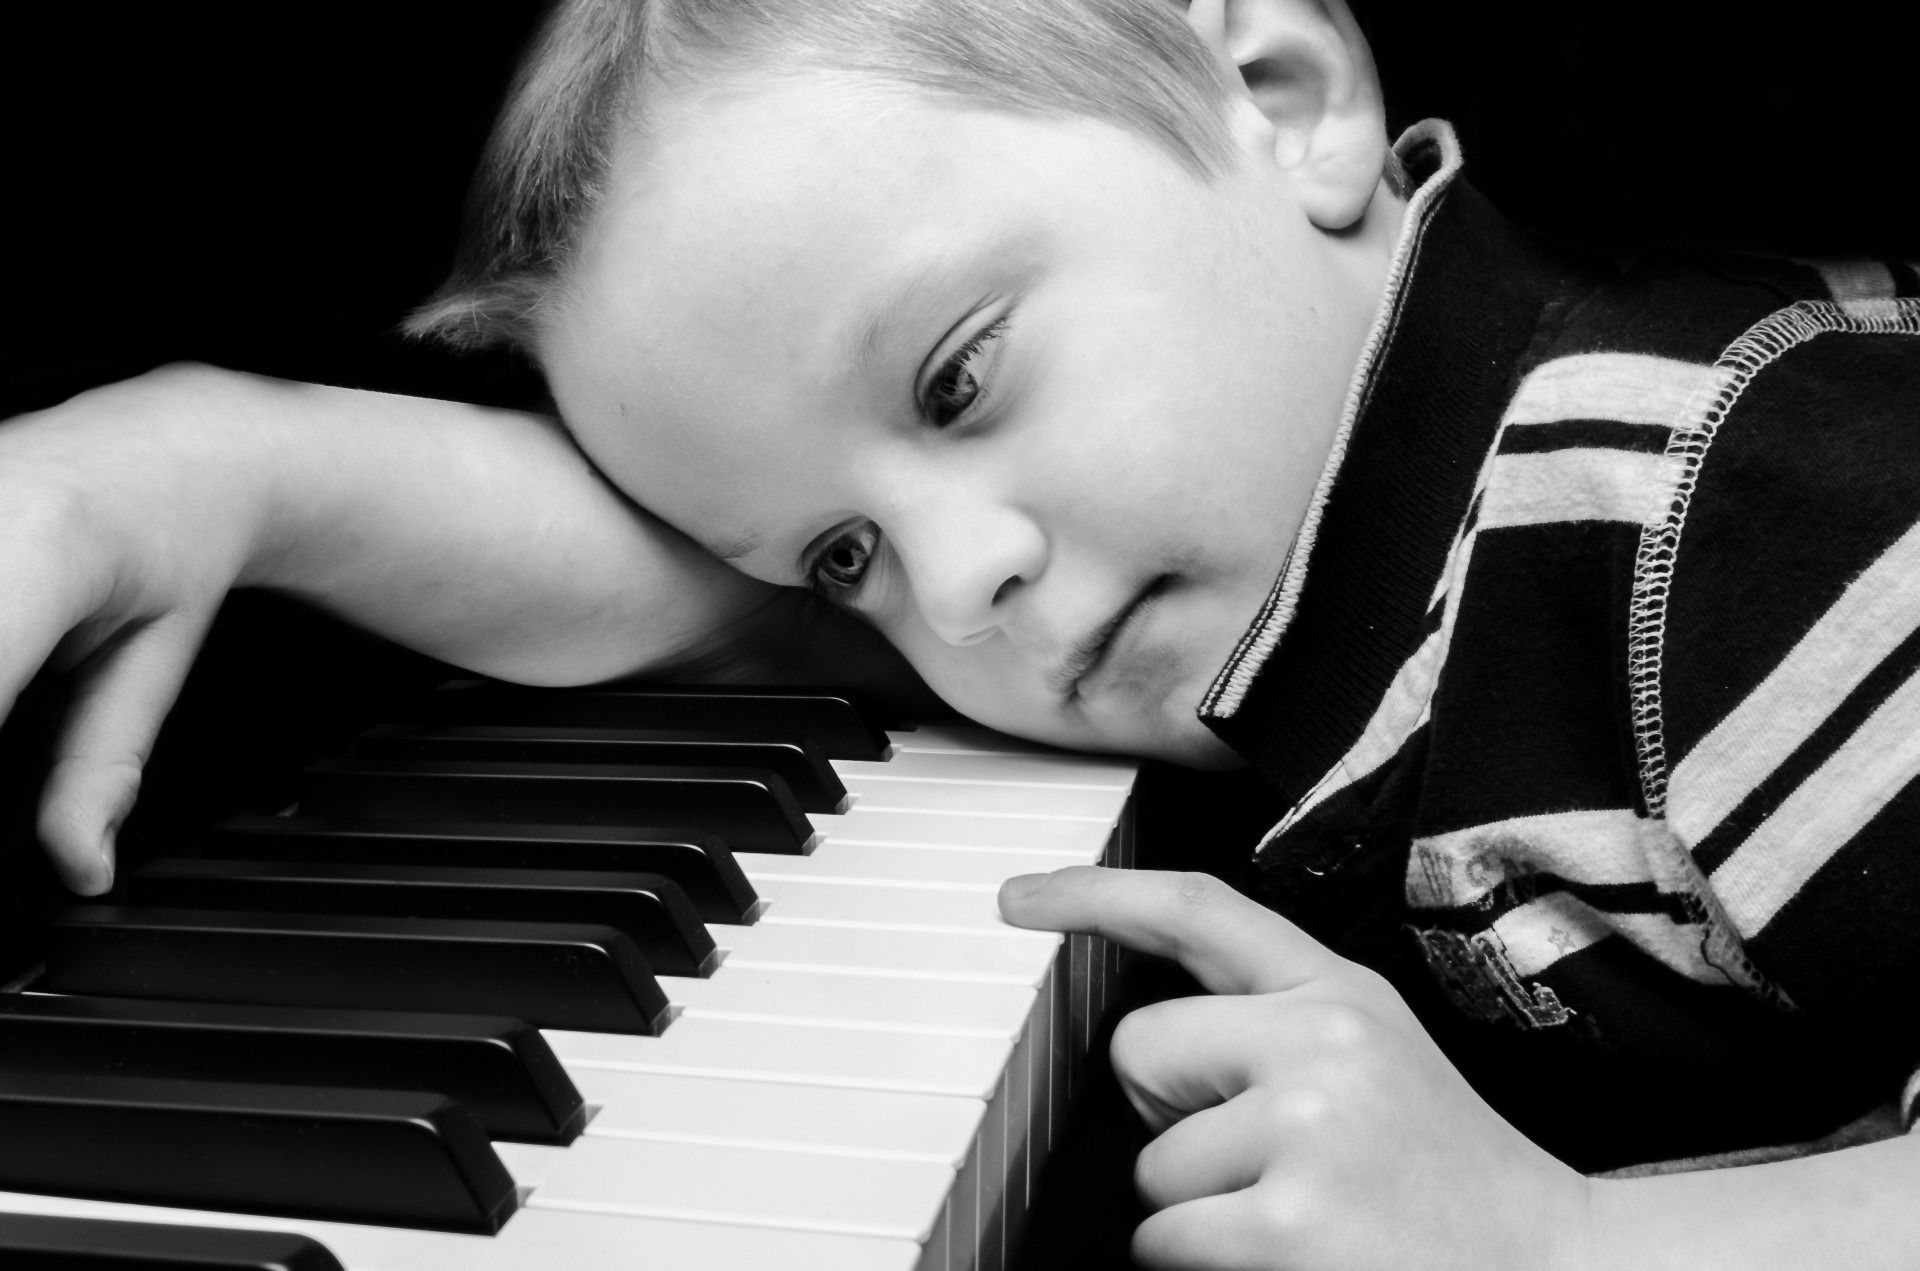 ragazzo triste carta da parati hd full size,pianoforte,strumento musicale,pianista,bambino,tastiera musicale